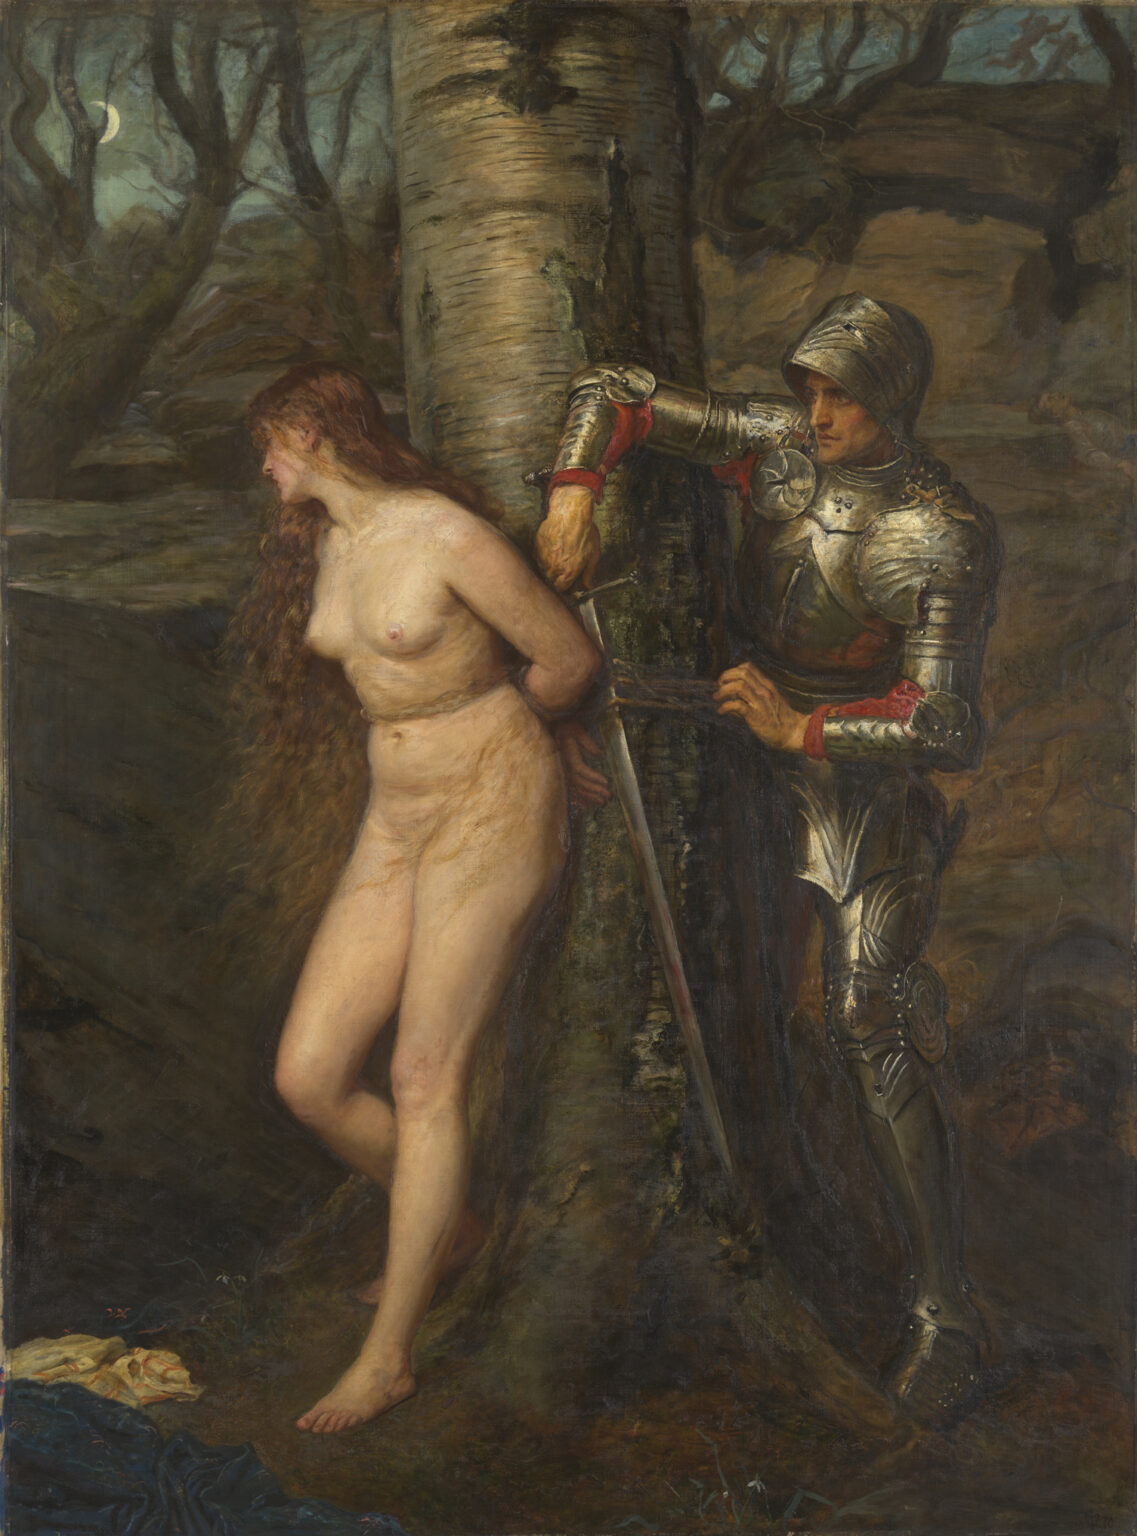 Ein Ritter befreit eine an einen Baum gefesselte, nackte Frau mit seinem Schwert. Die Frau nimmt eine beschämte Haltung an und wendet sich von dem Ritter ab.